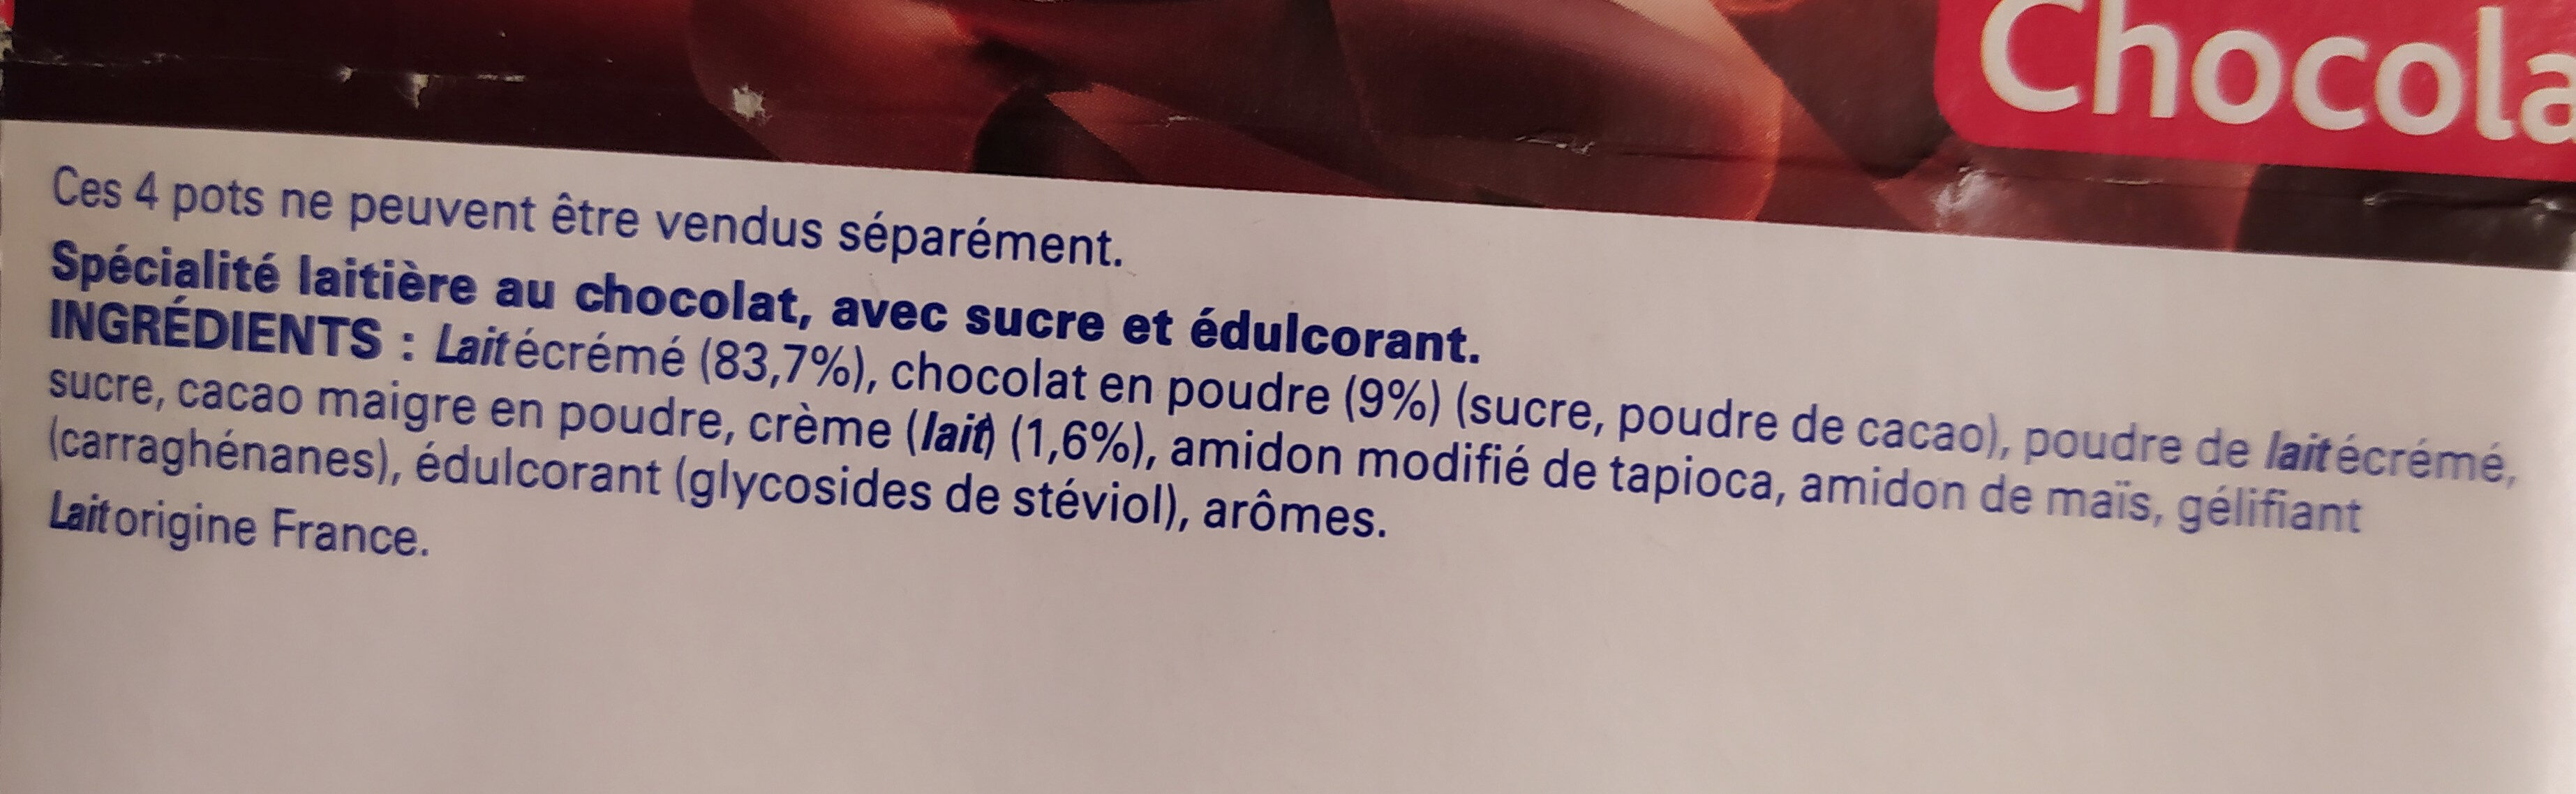 Sveltesse Ferme et Fondant Chocolat offre éco - Ingredientes - fr